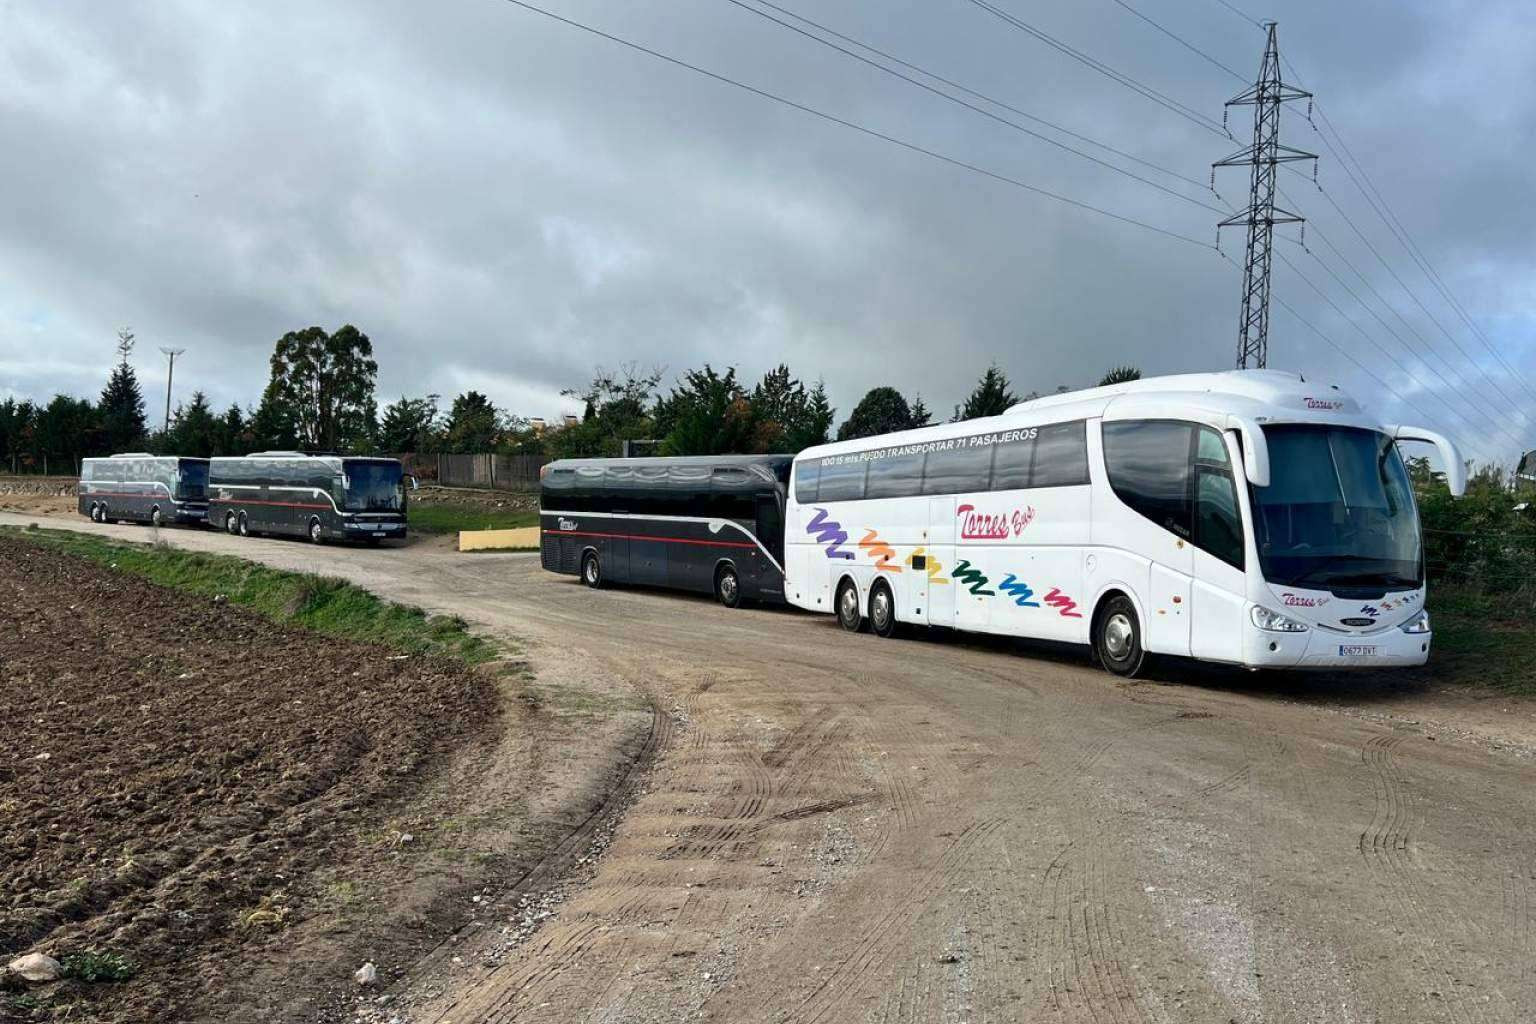  El servicio integral de Torres Bus realiza traslados en autobús por Madrid 